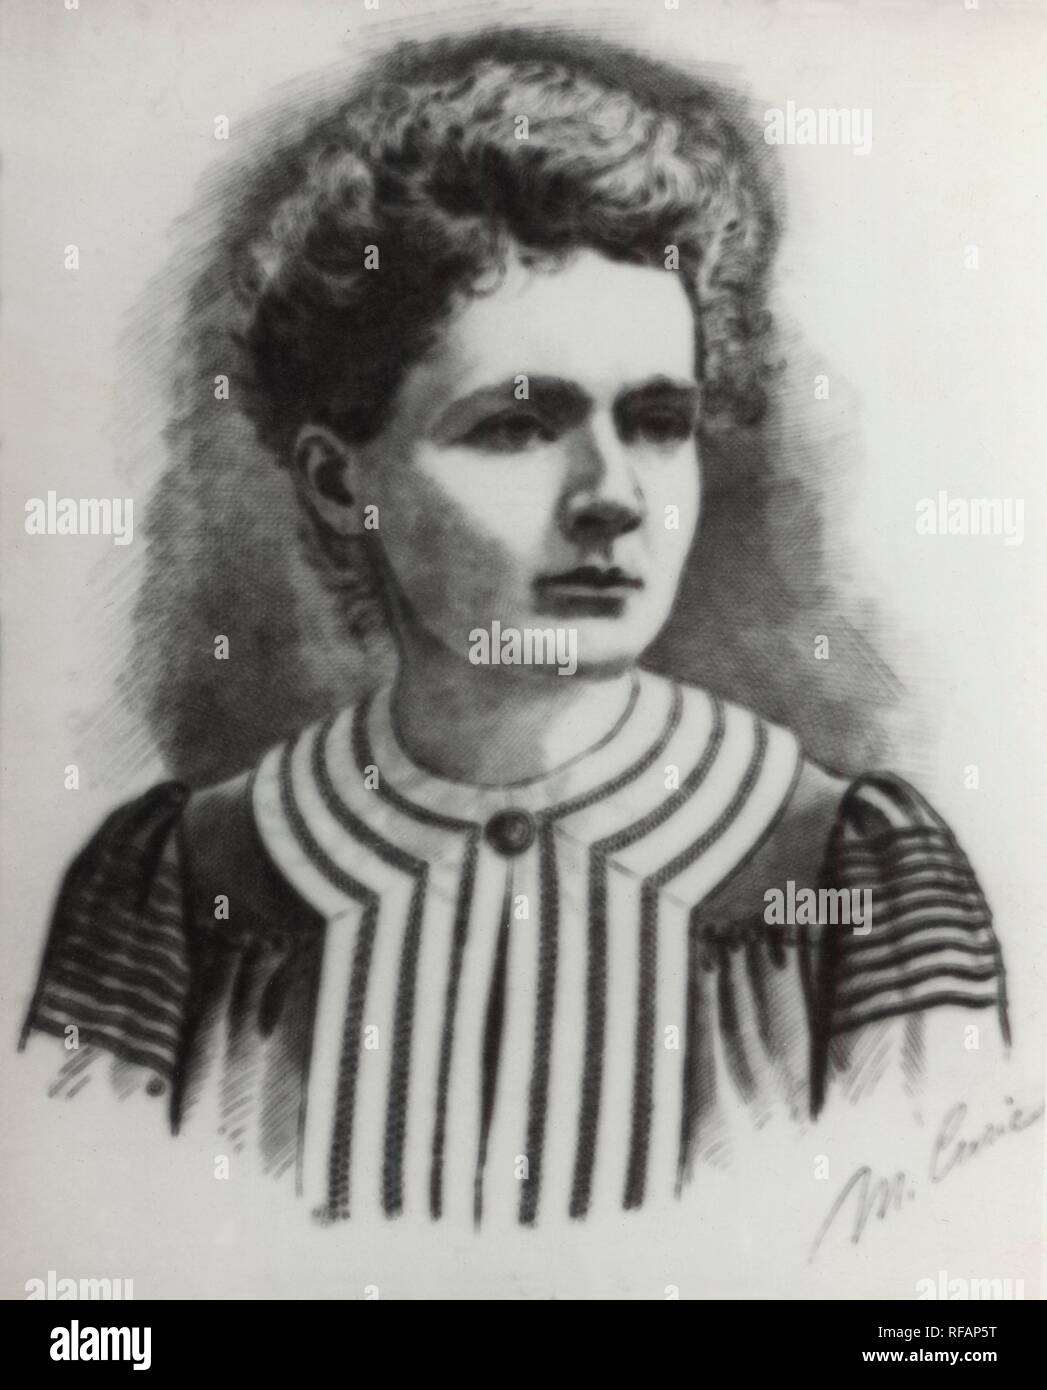 Marie Curie, conocida también como Maria Sklodowska-Curie (1867–1934) fue una química y física polaca, posteriormente nacionalizada francesa. Pionera en el campo de la radiactividad, fue la primera persona en recibir dos premios Nobel y la primera mujer en ser profesora en la Universidad de París. Stock Photo